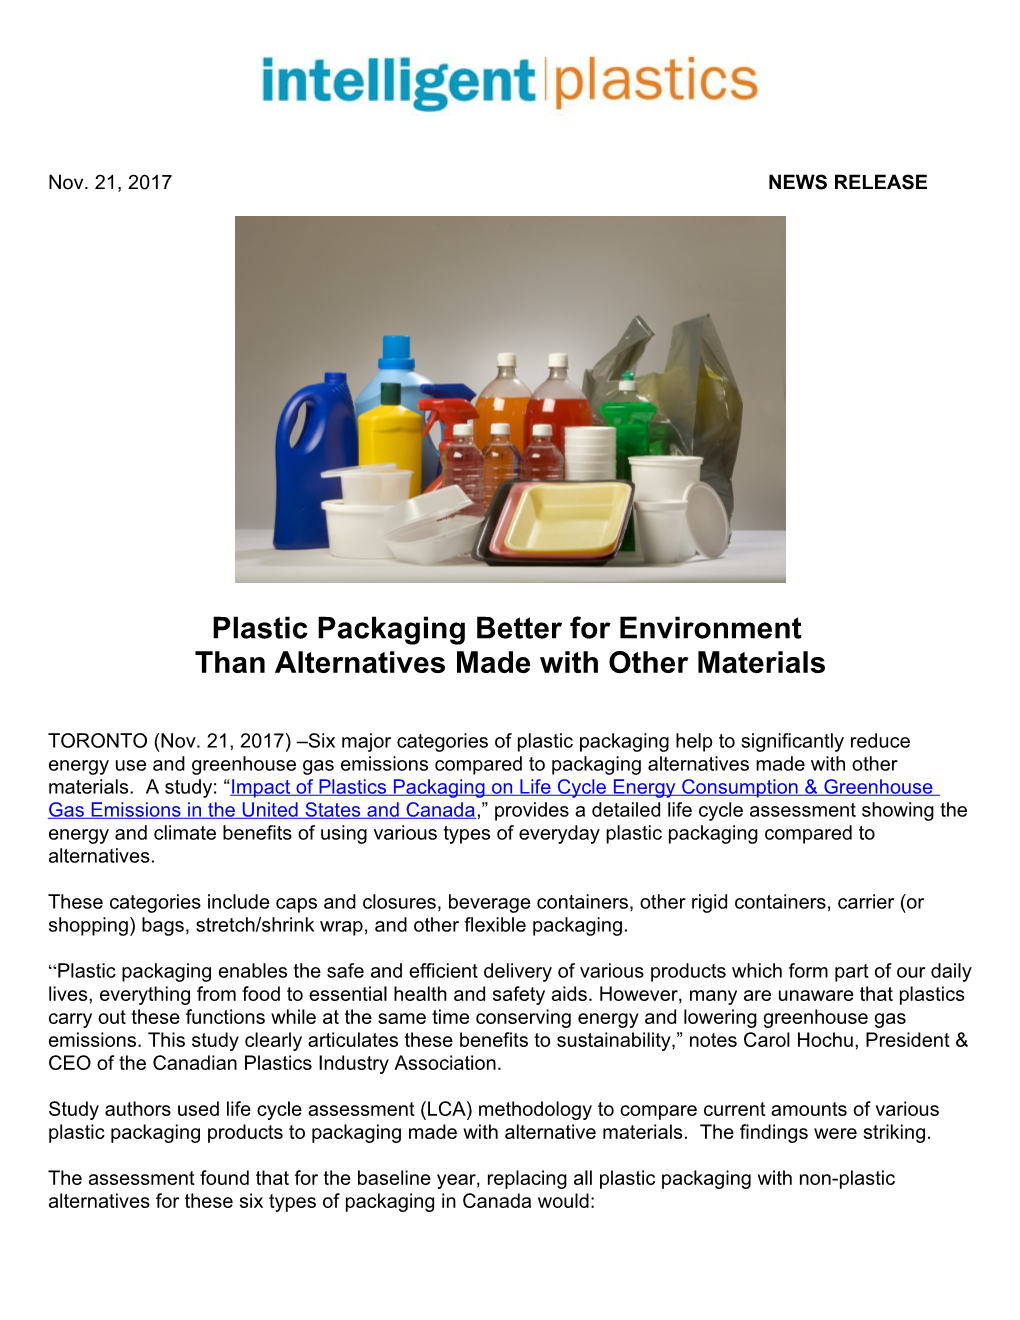 Plastic Packaging Better for Environment